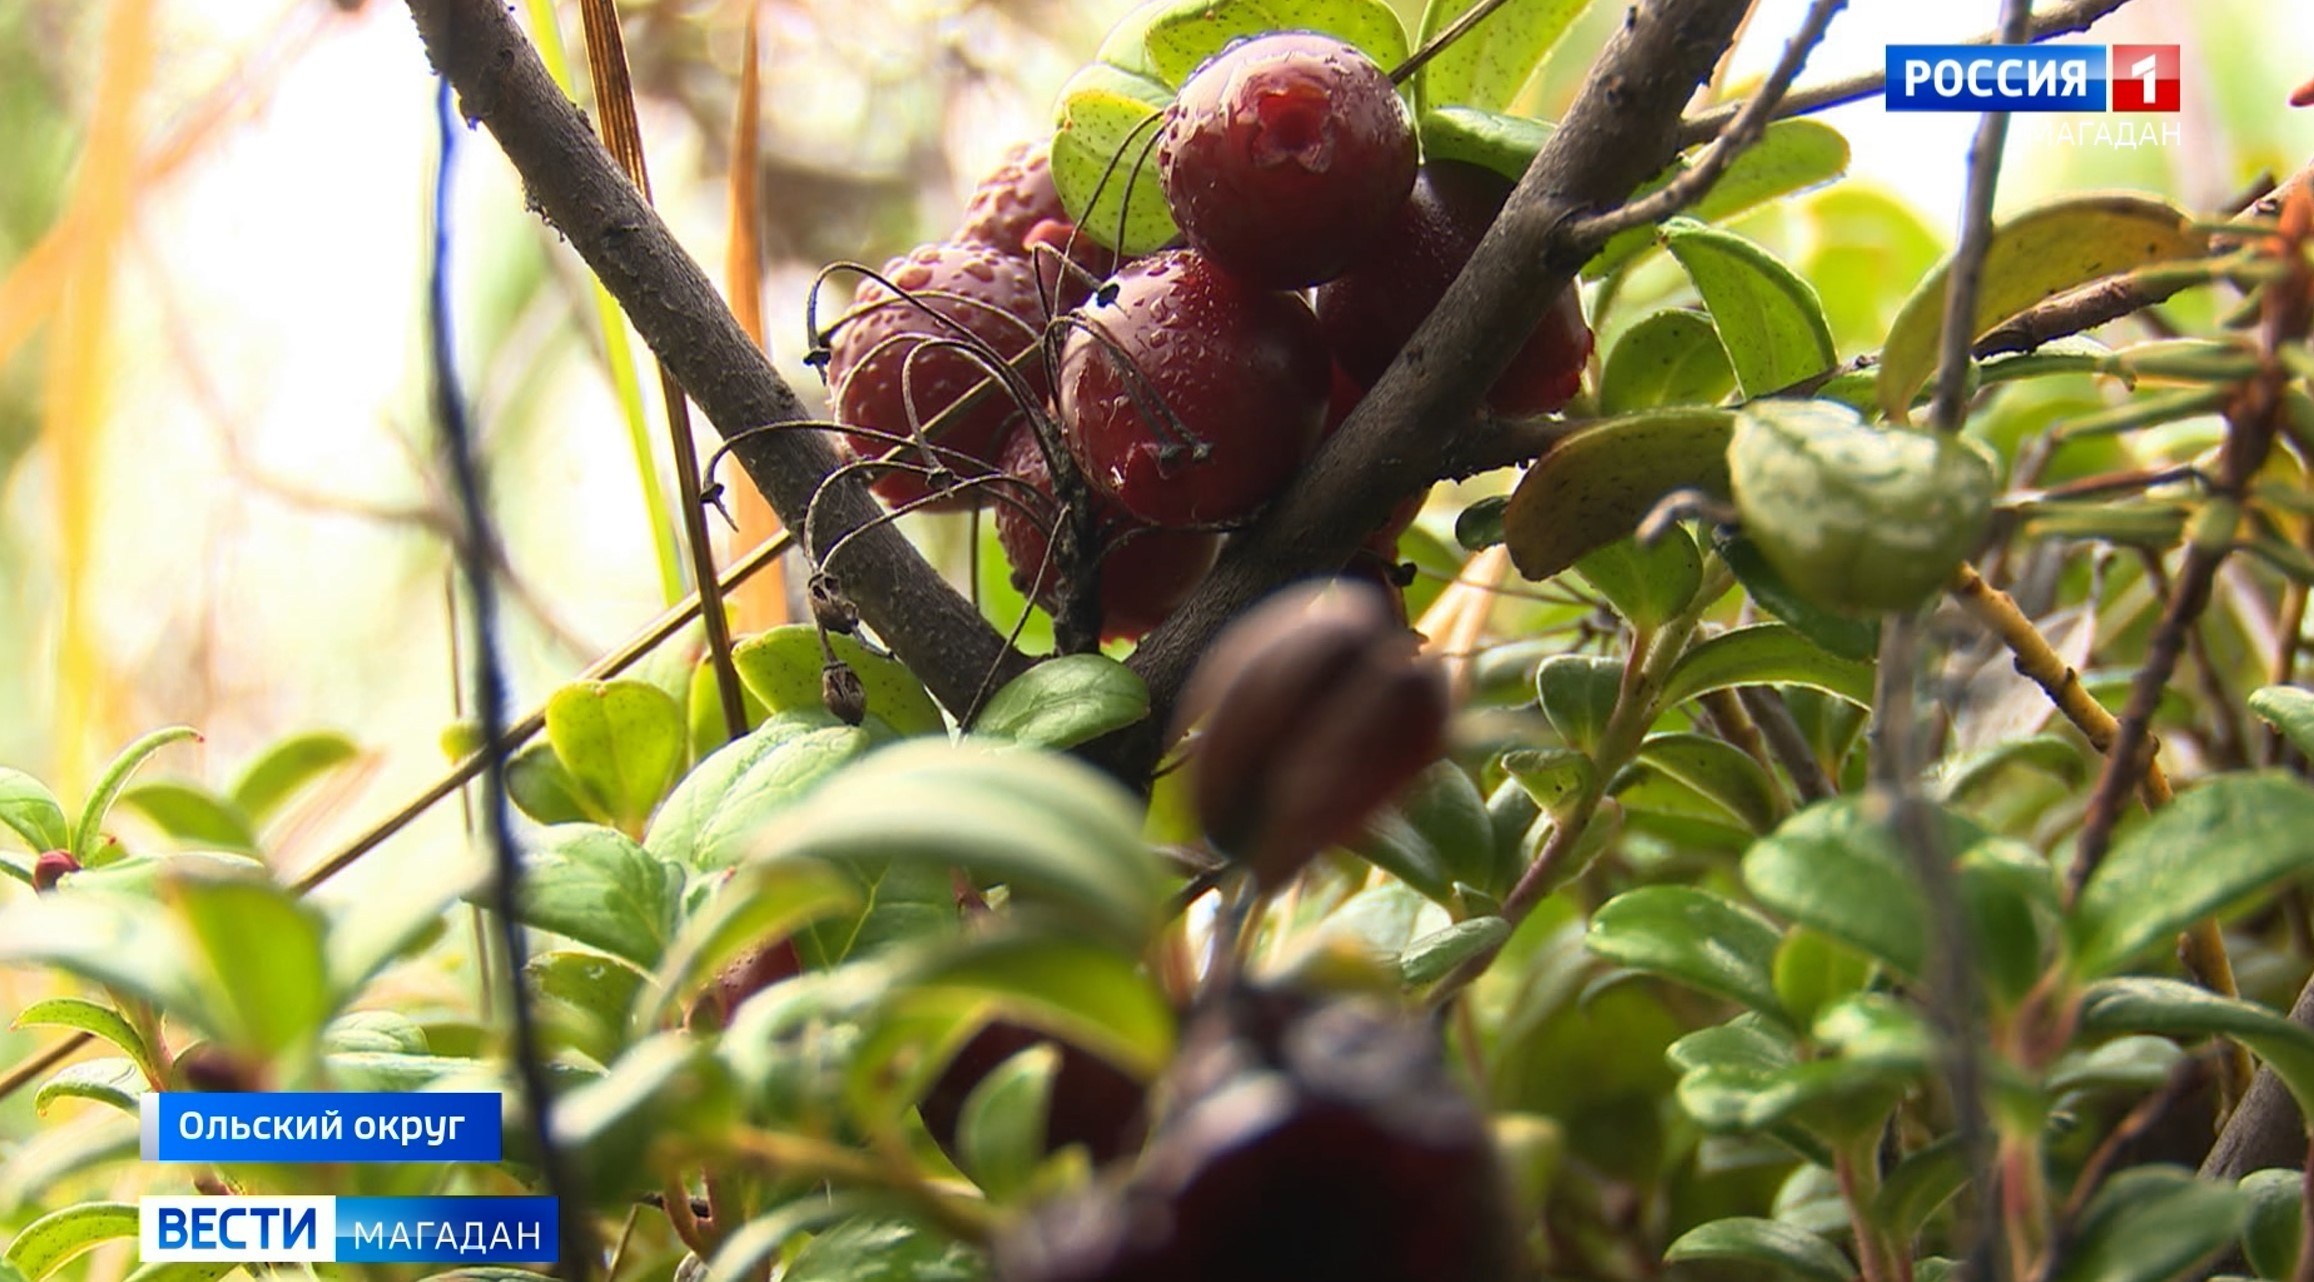 Грибы и ягоды собирают в лесах Магаданской области